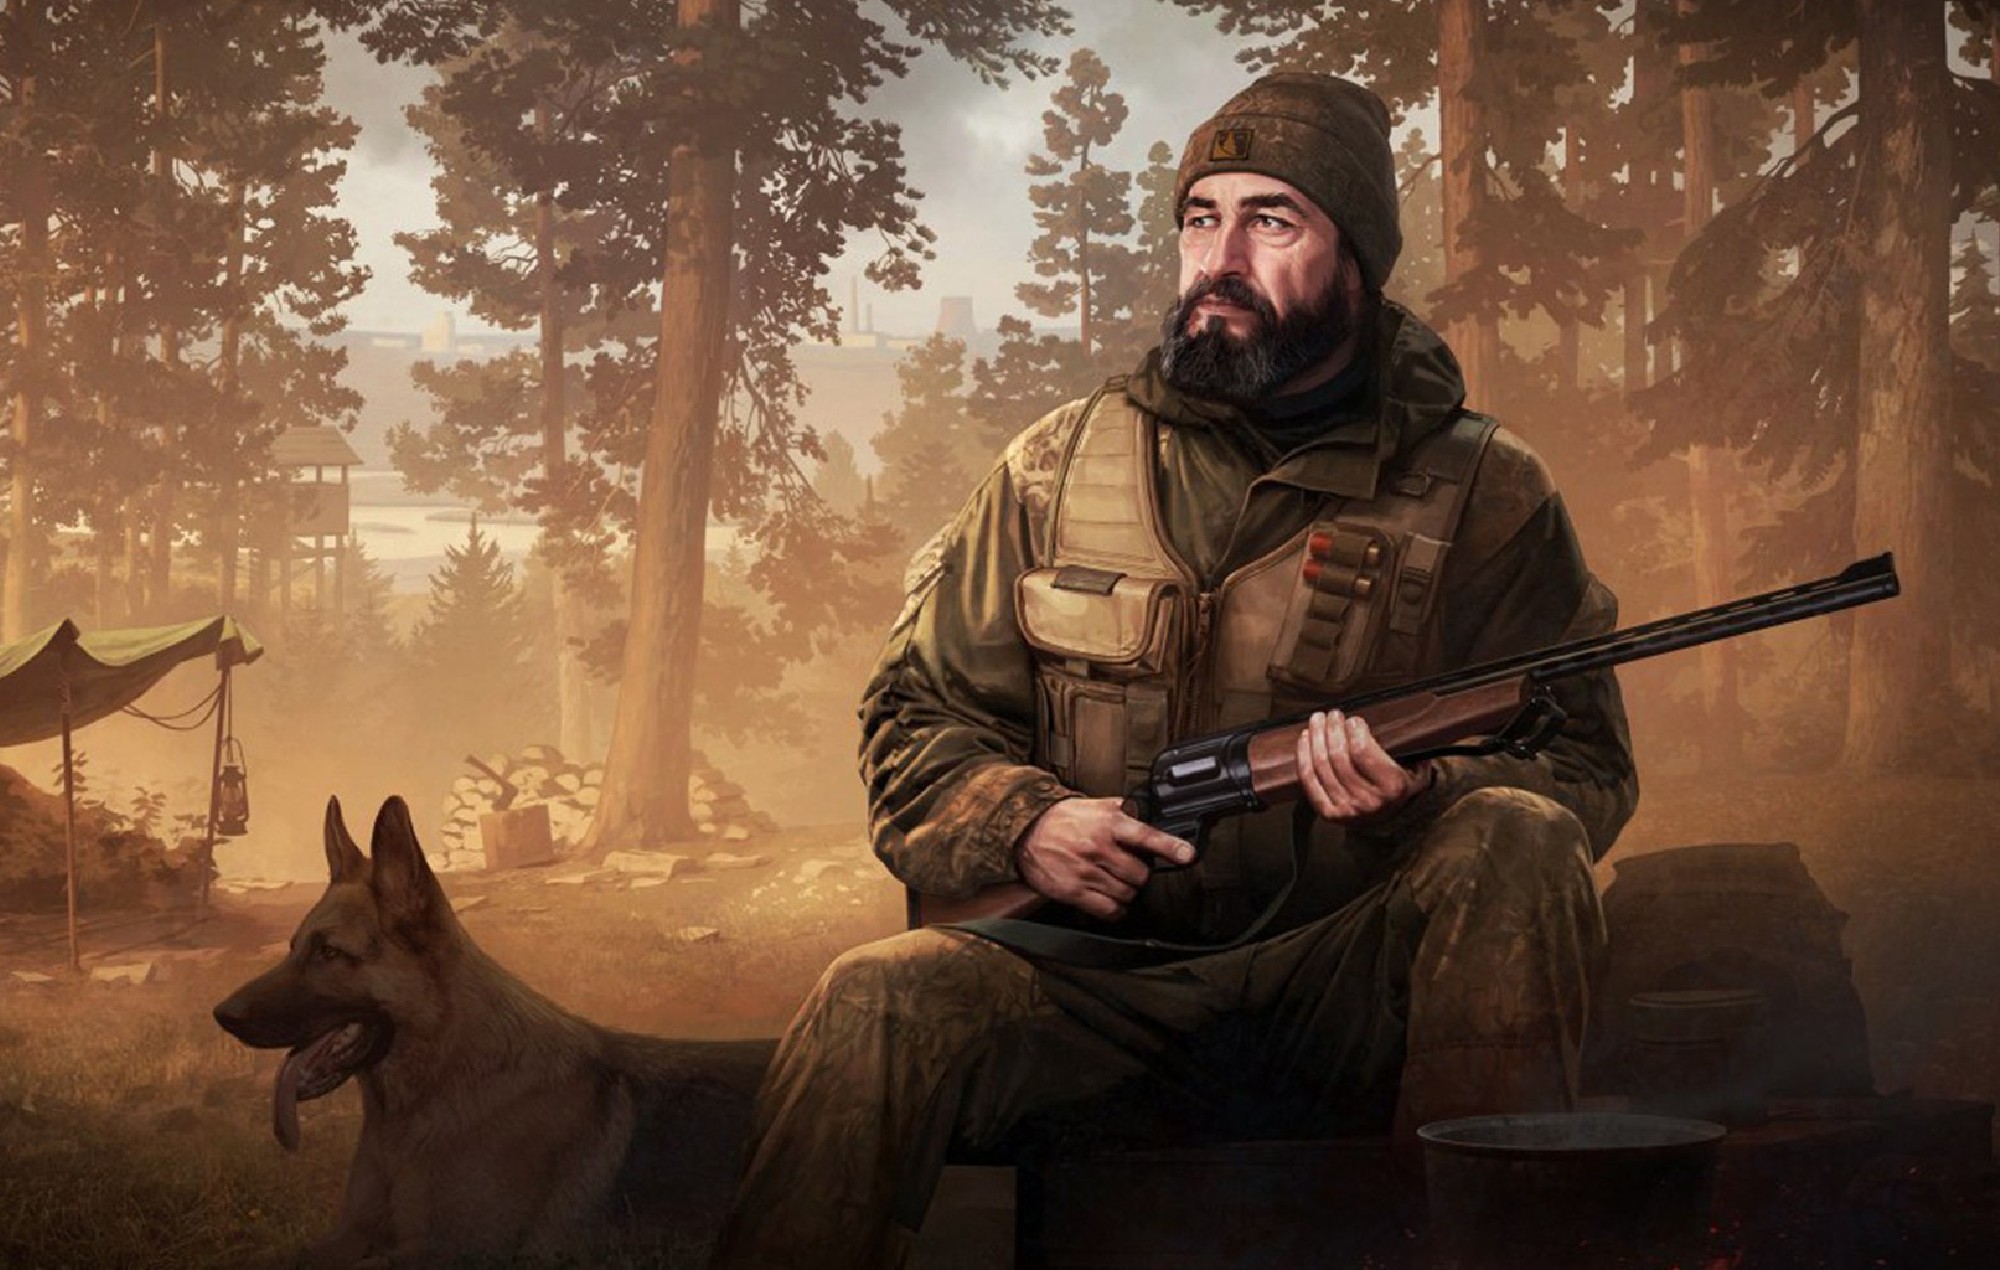 El nuevo modo cooperativo de "Escape From Tarkov" estará disponible para más jugadores tras las reacciones negativas